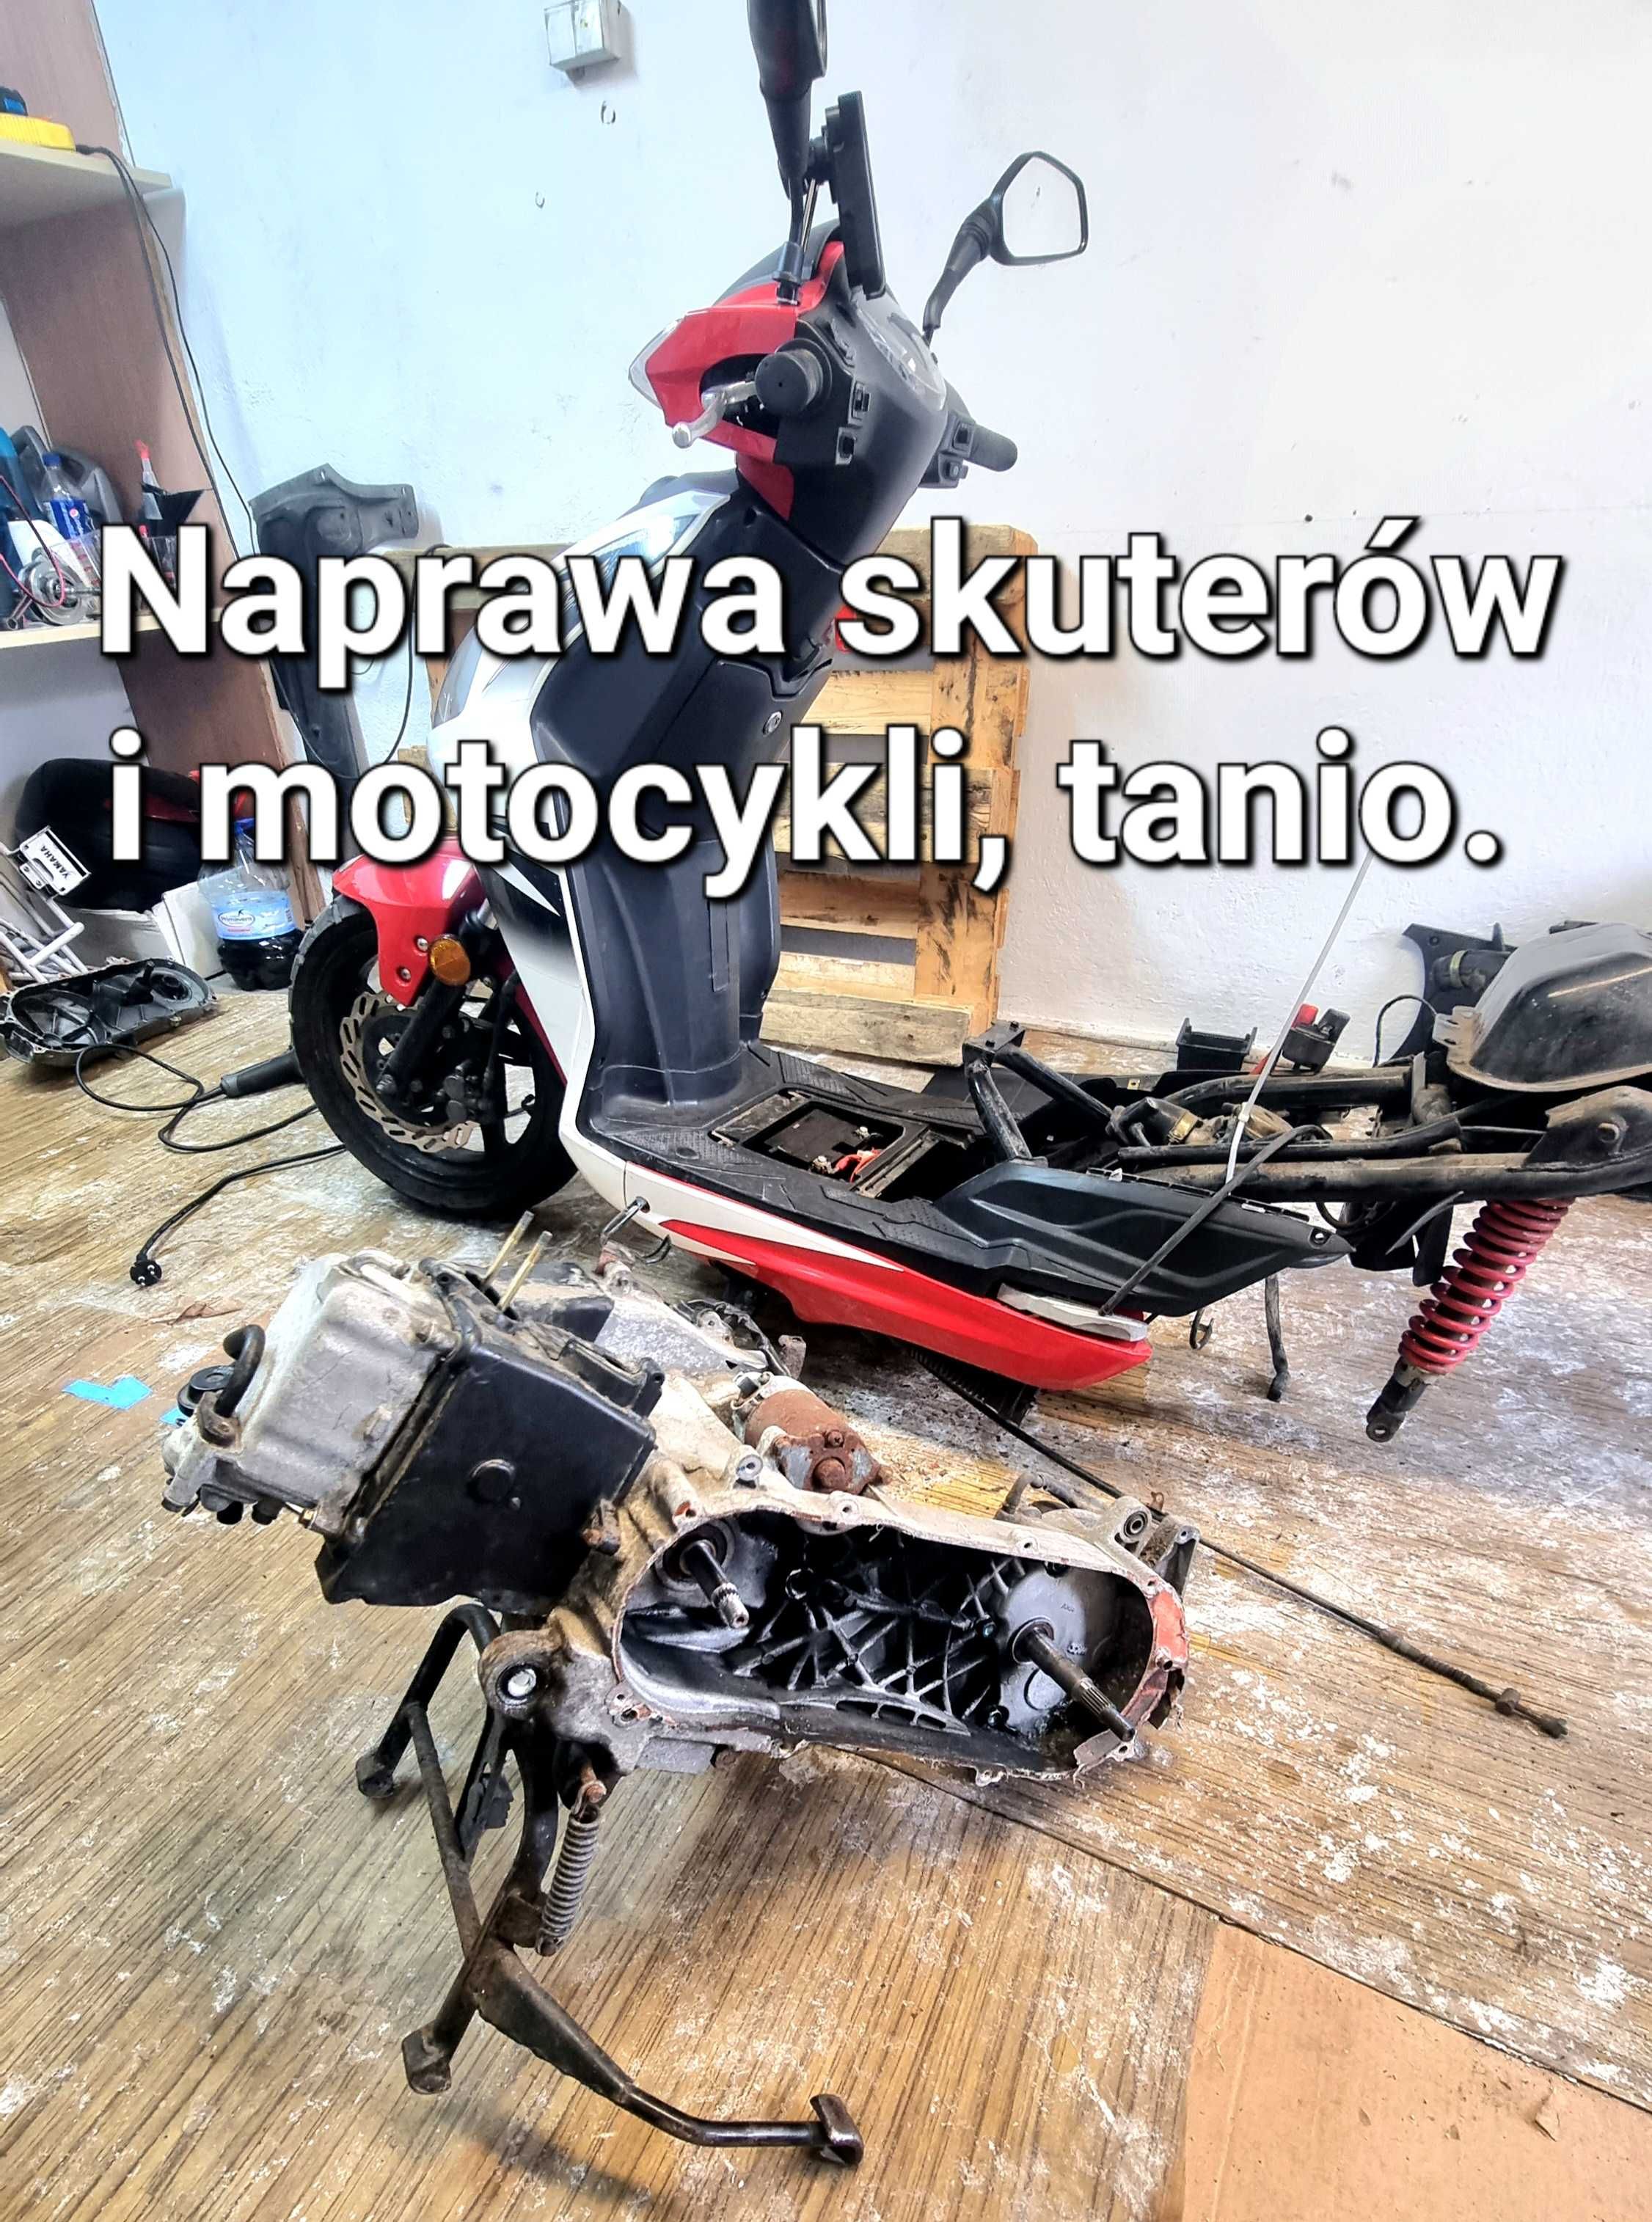 Naprawa skuterów i motocykli, tanio. Warszawa